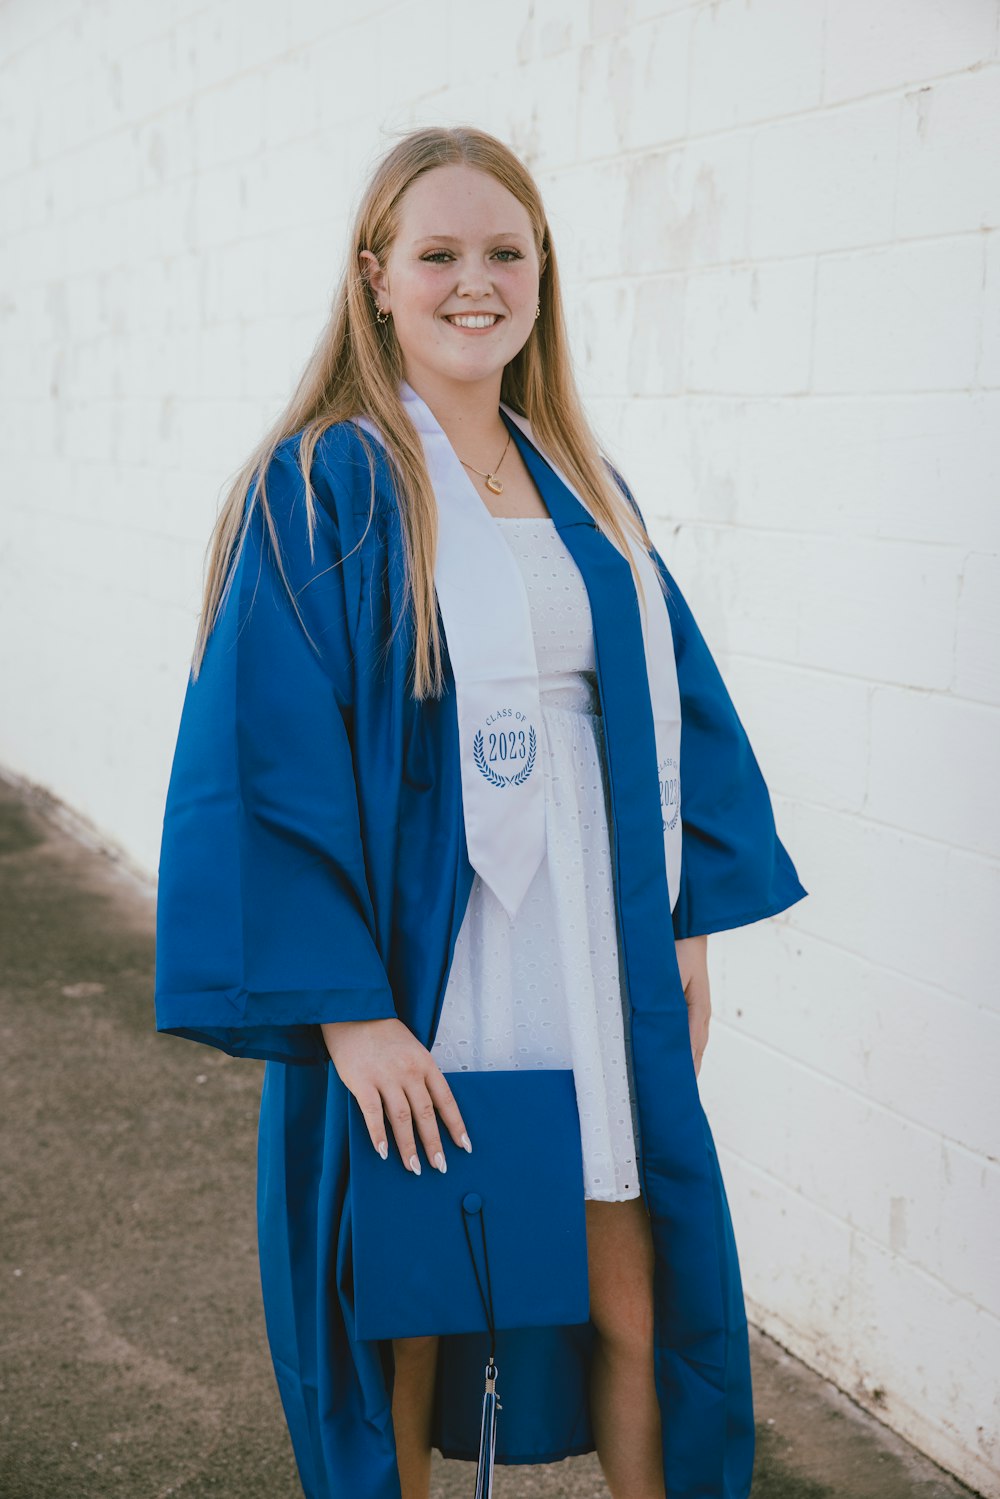 Una mujer con un vestido azul de graduación posando para una foto